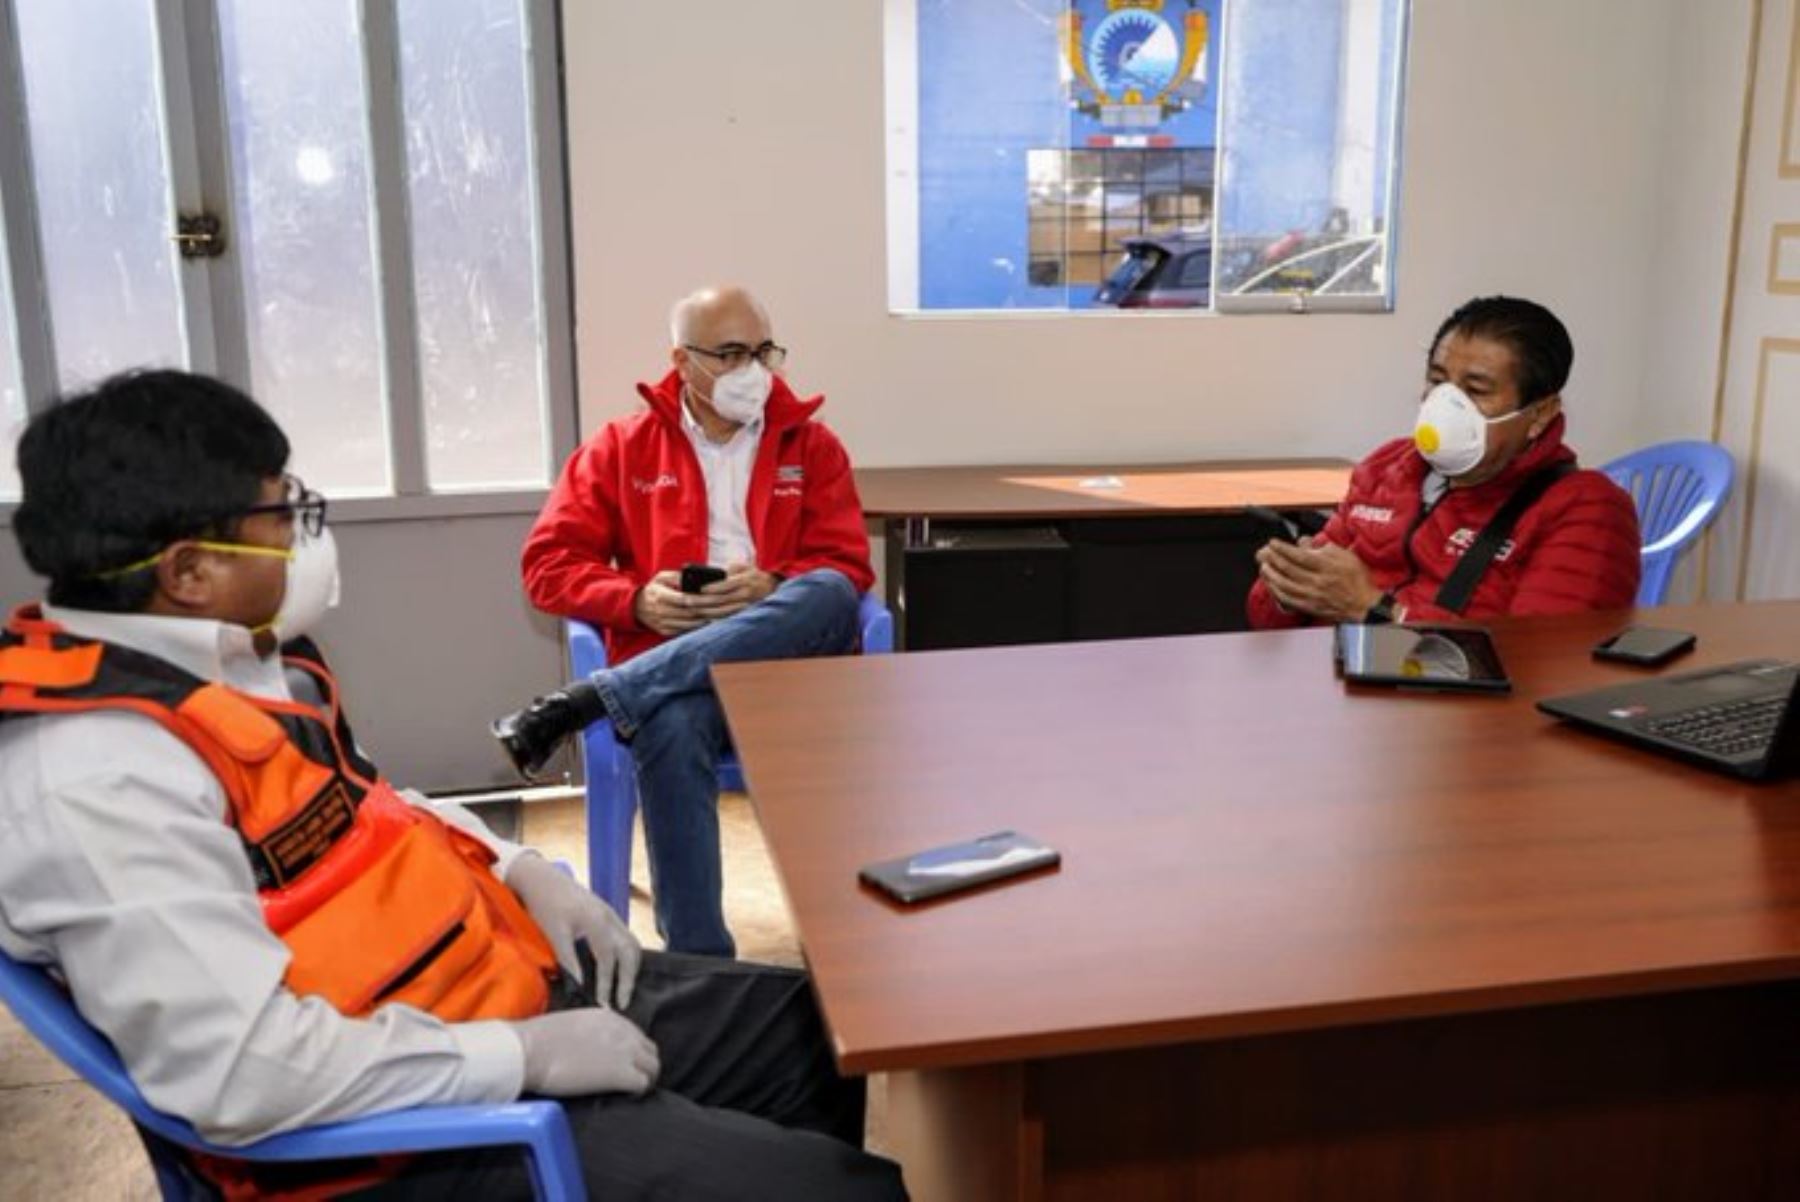 El ministro de Vivienda, Construcción y Saneamiento, Rodolfo Yáñez, visitó Puno para evaluar medidas de prevención frente a la pandemia del nuevo coronavirus. Foto: ANDINA/Difusión